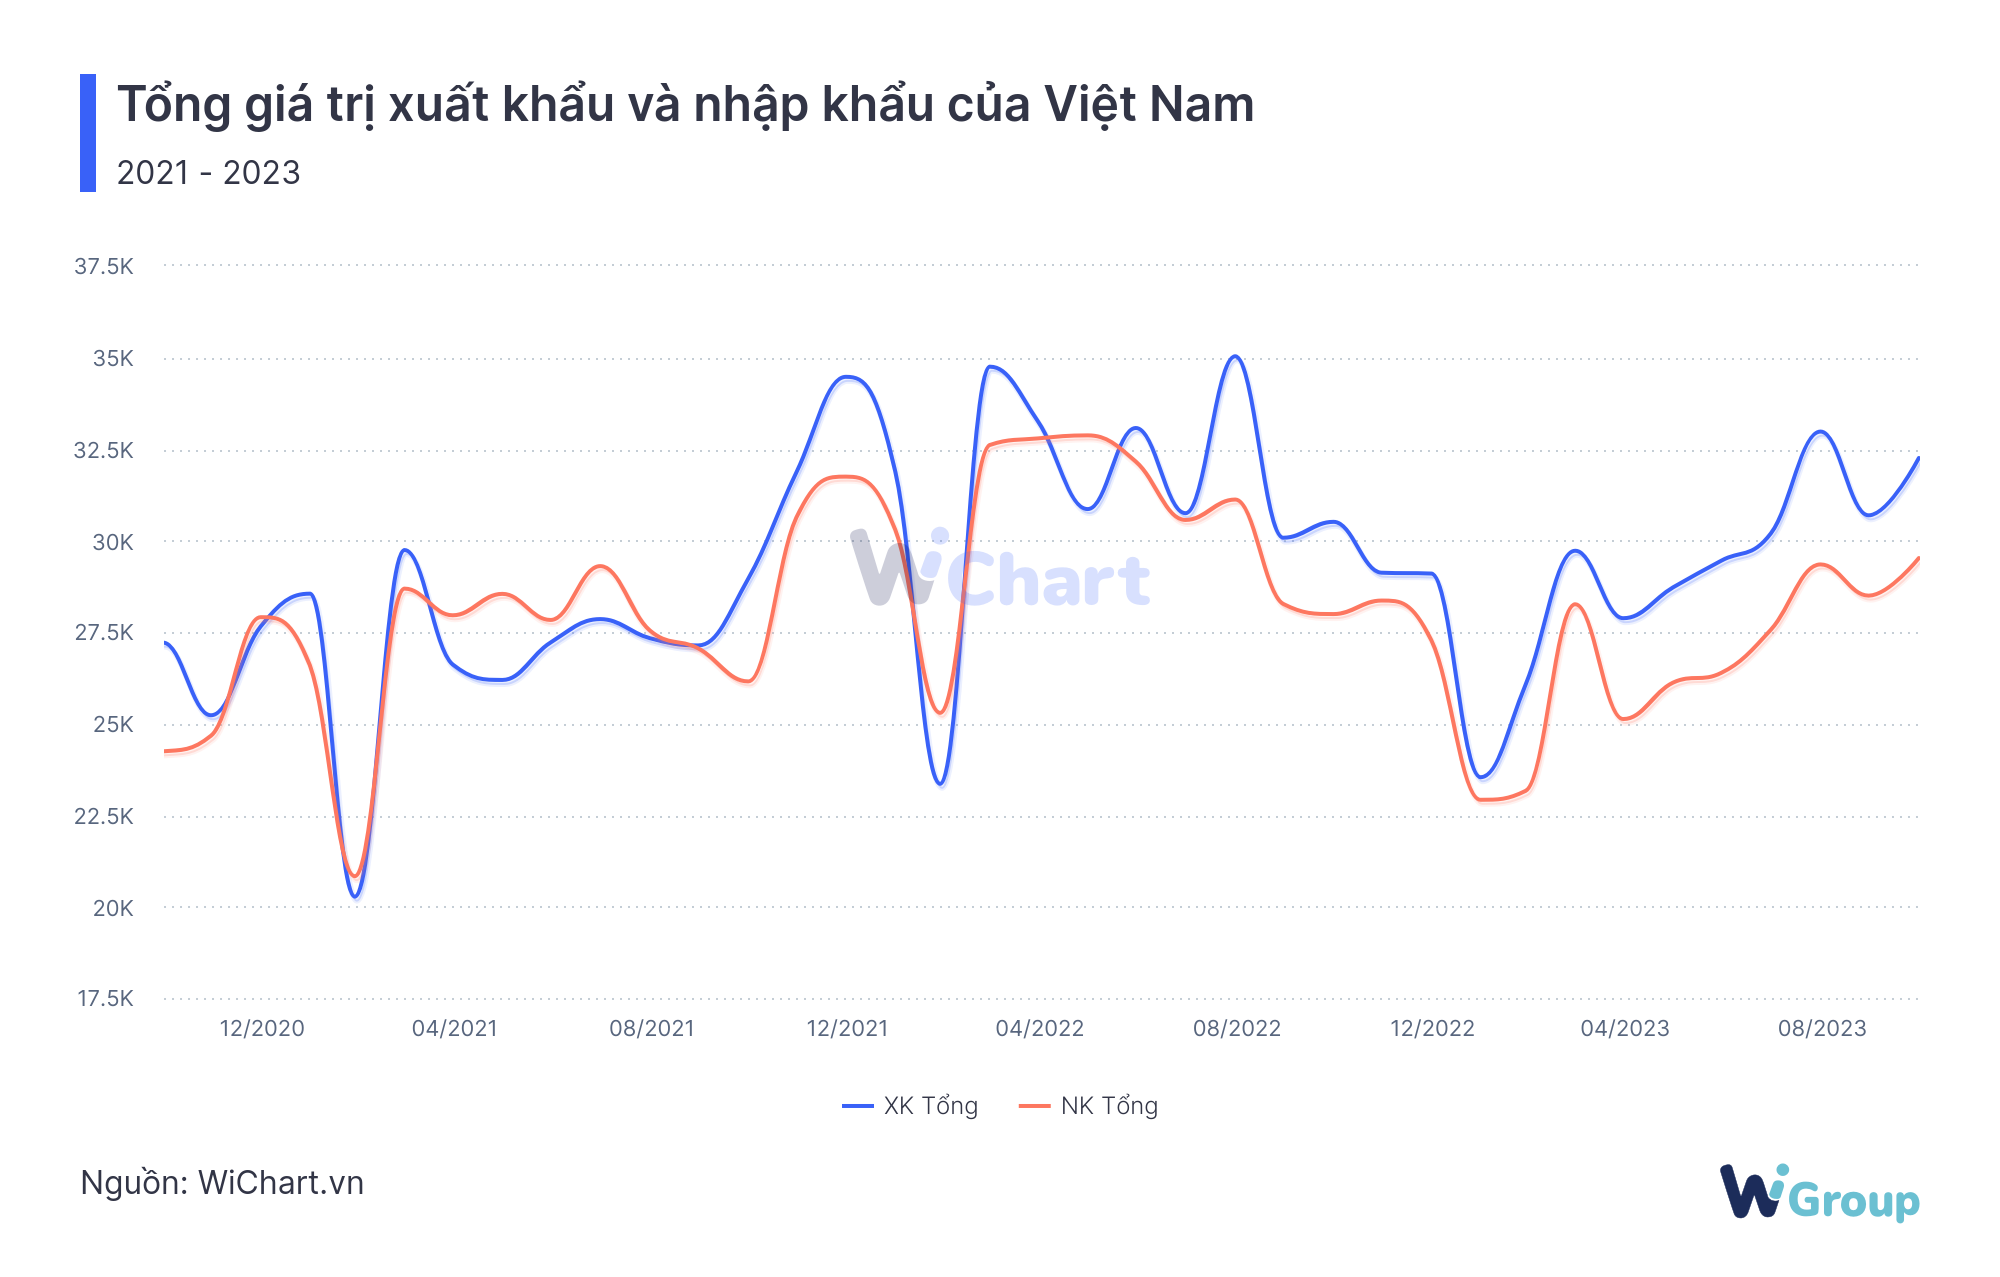 Tổng giá trị xuất nhập khẩu Việt Nam - WiChart